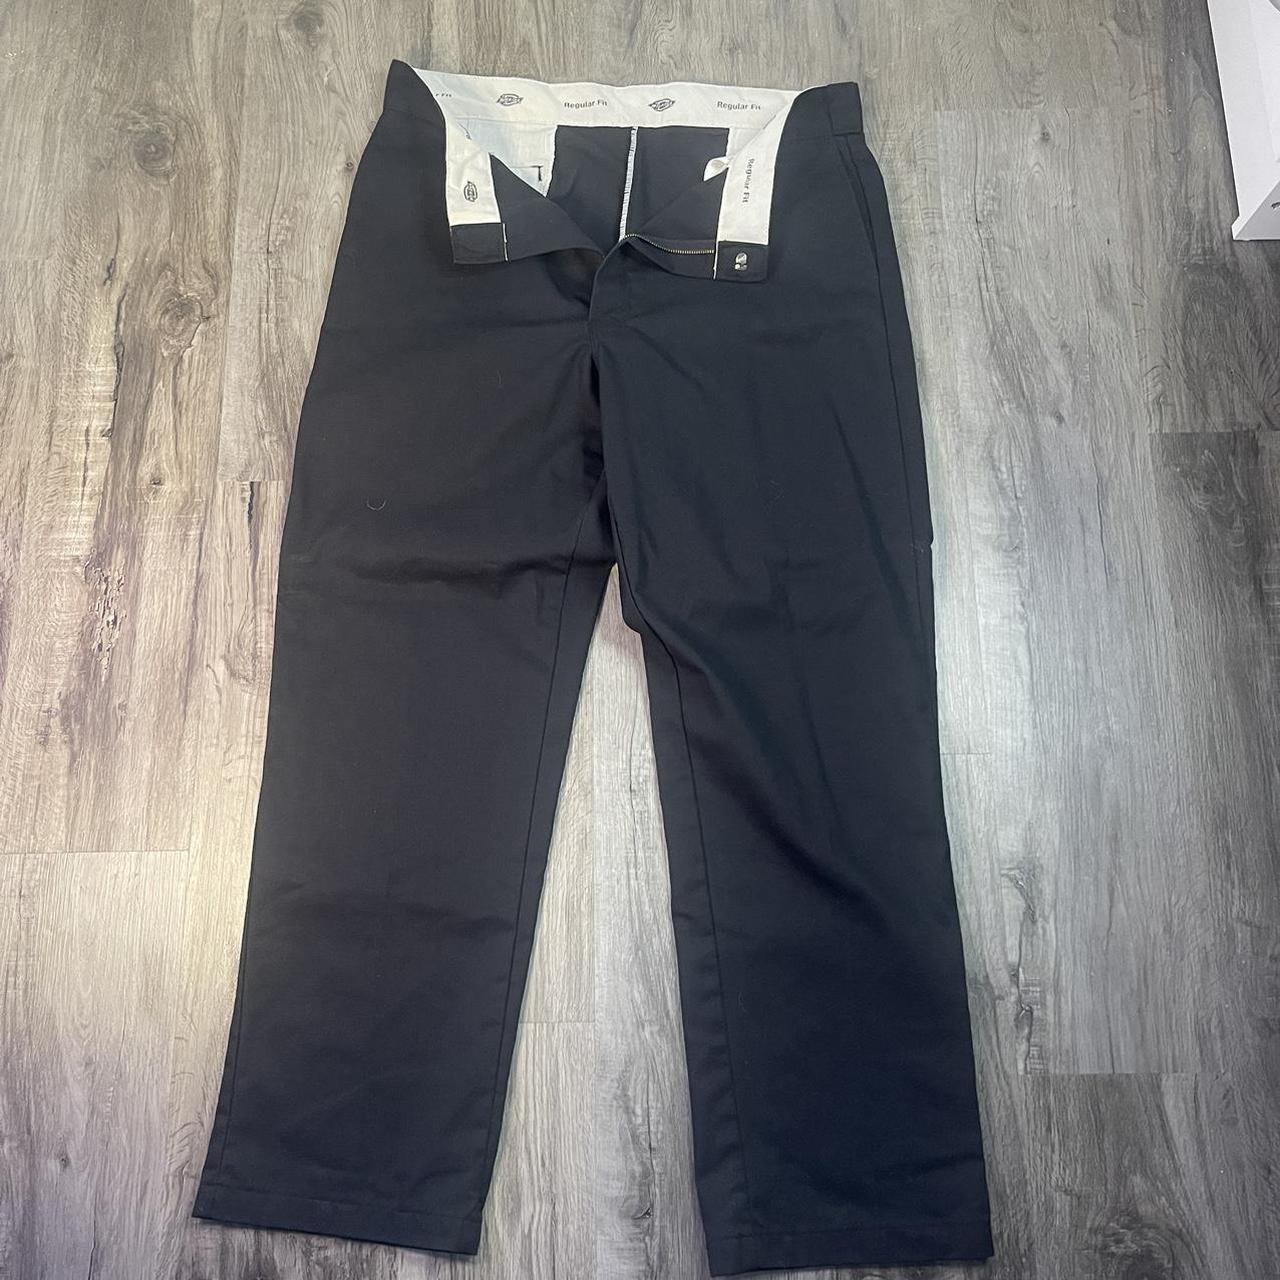 Dickies Black Pants 🍒 size: 38 x 32 🪩 black slack... - Depop